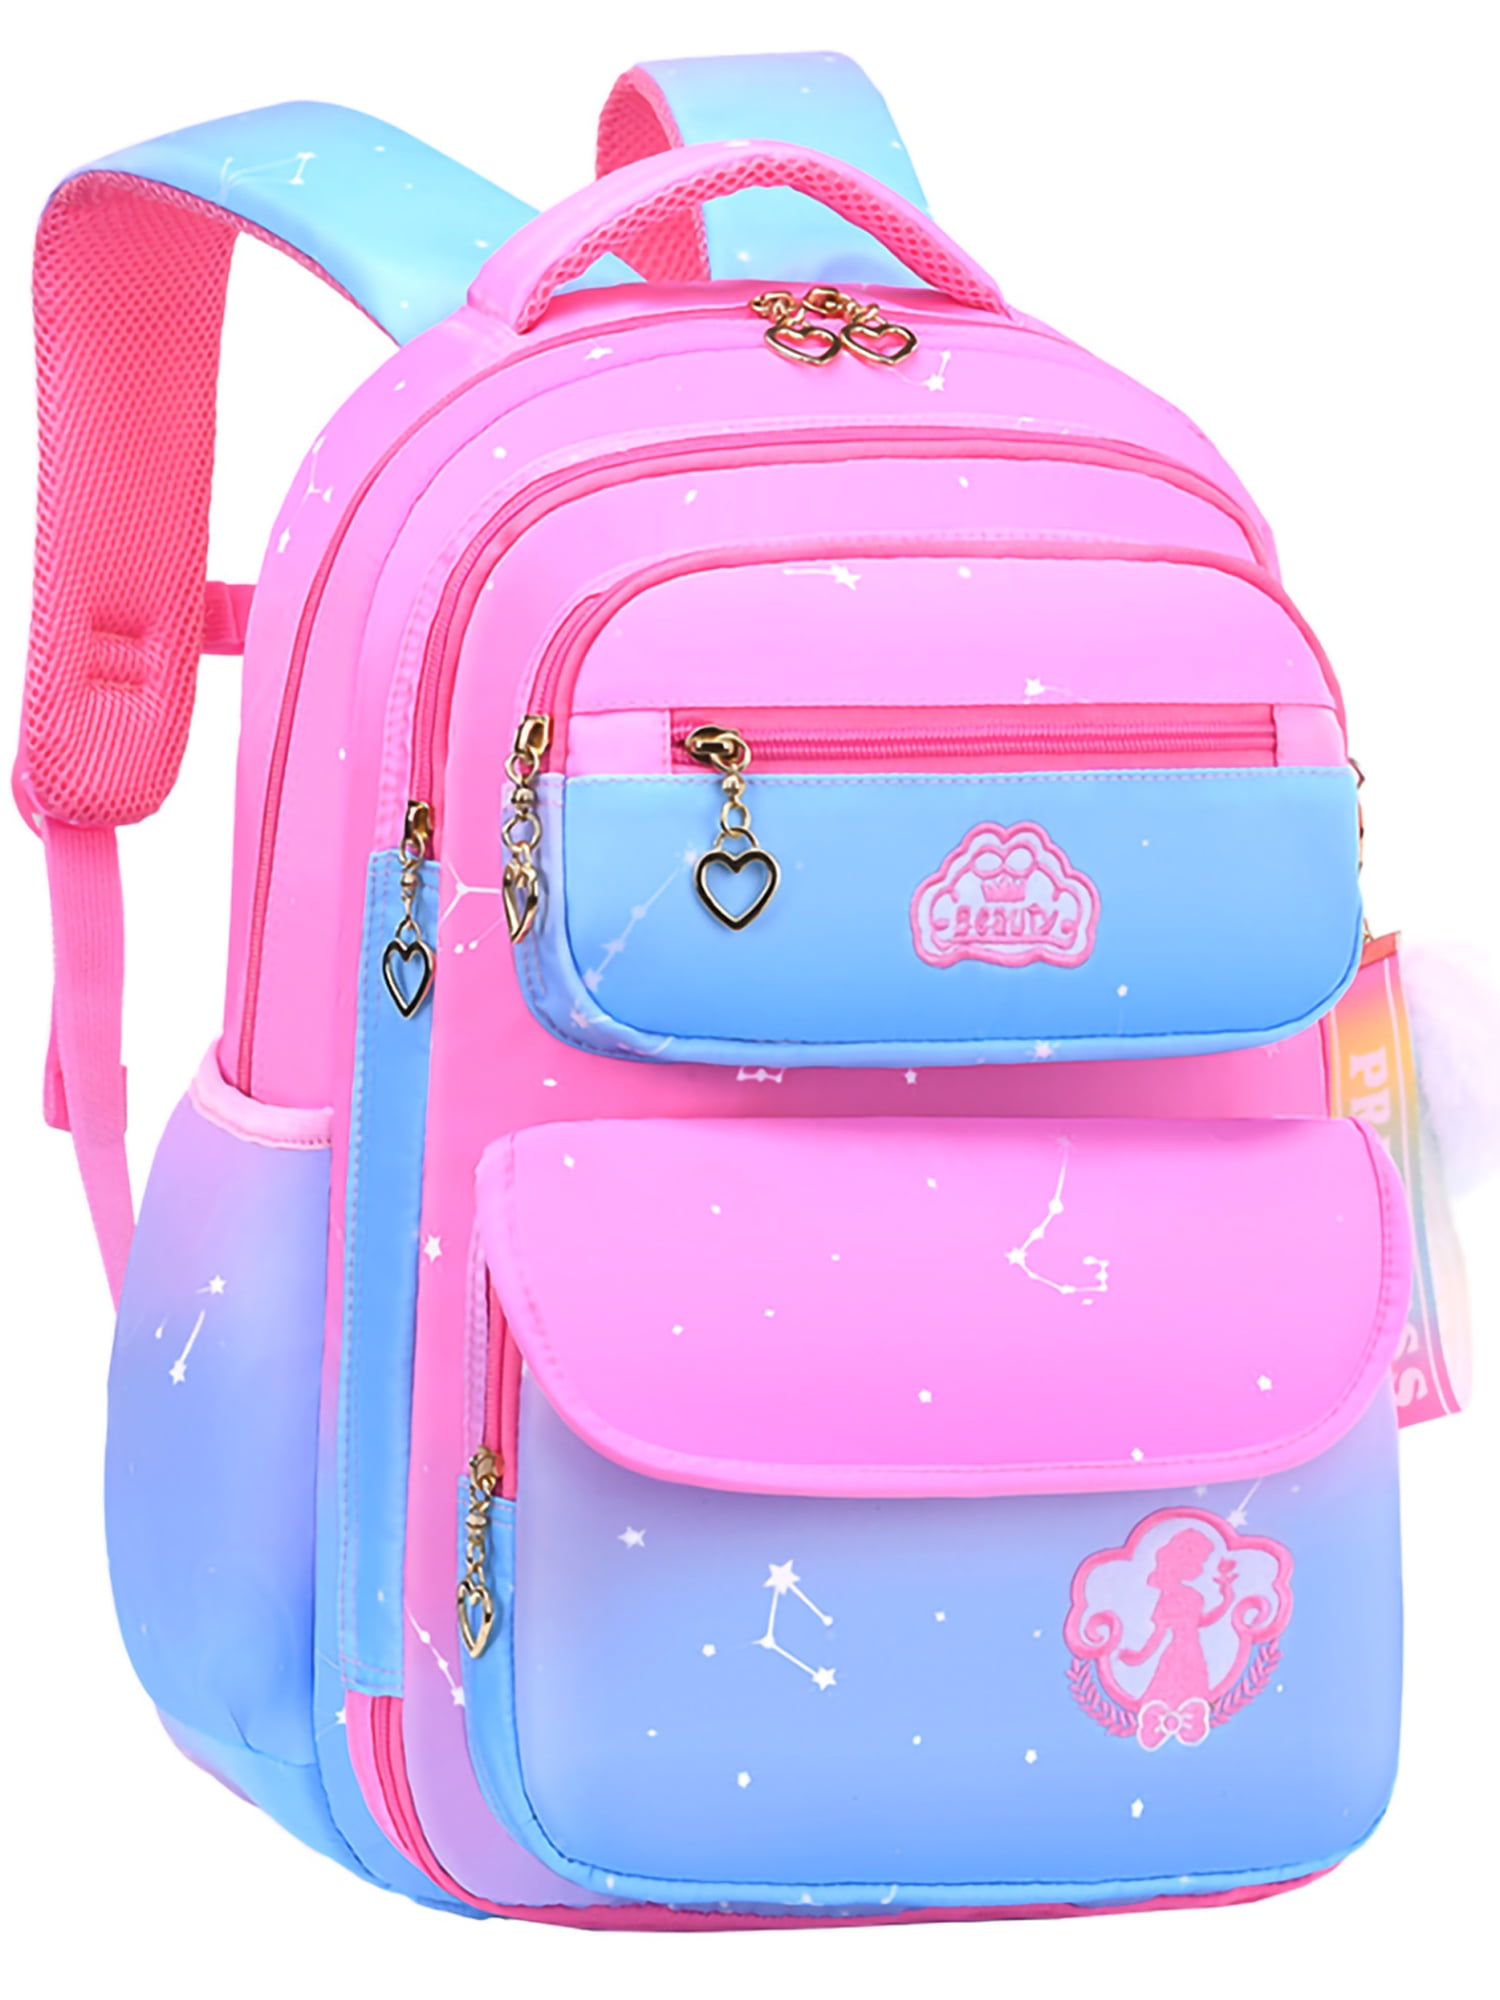 Lvelia School Bag Backpacks for Girls,Bookbags for Girls School Gift ...